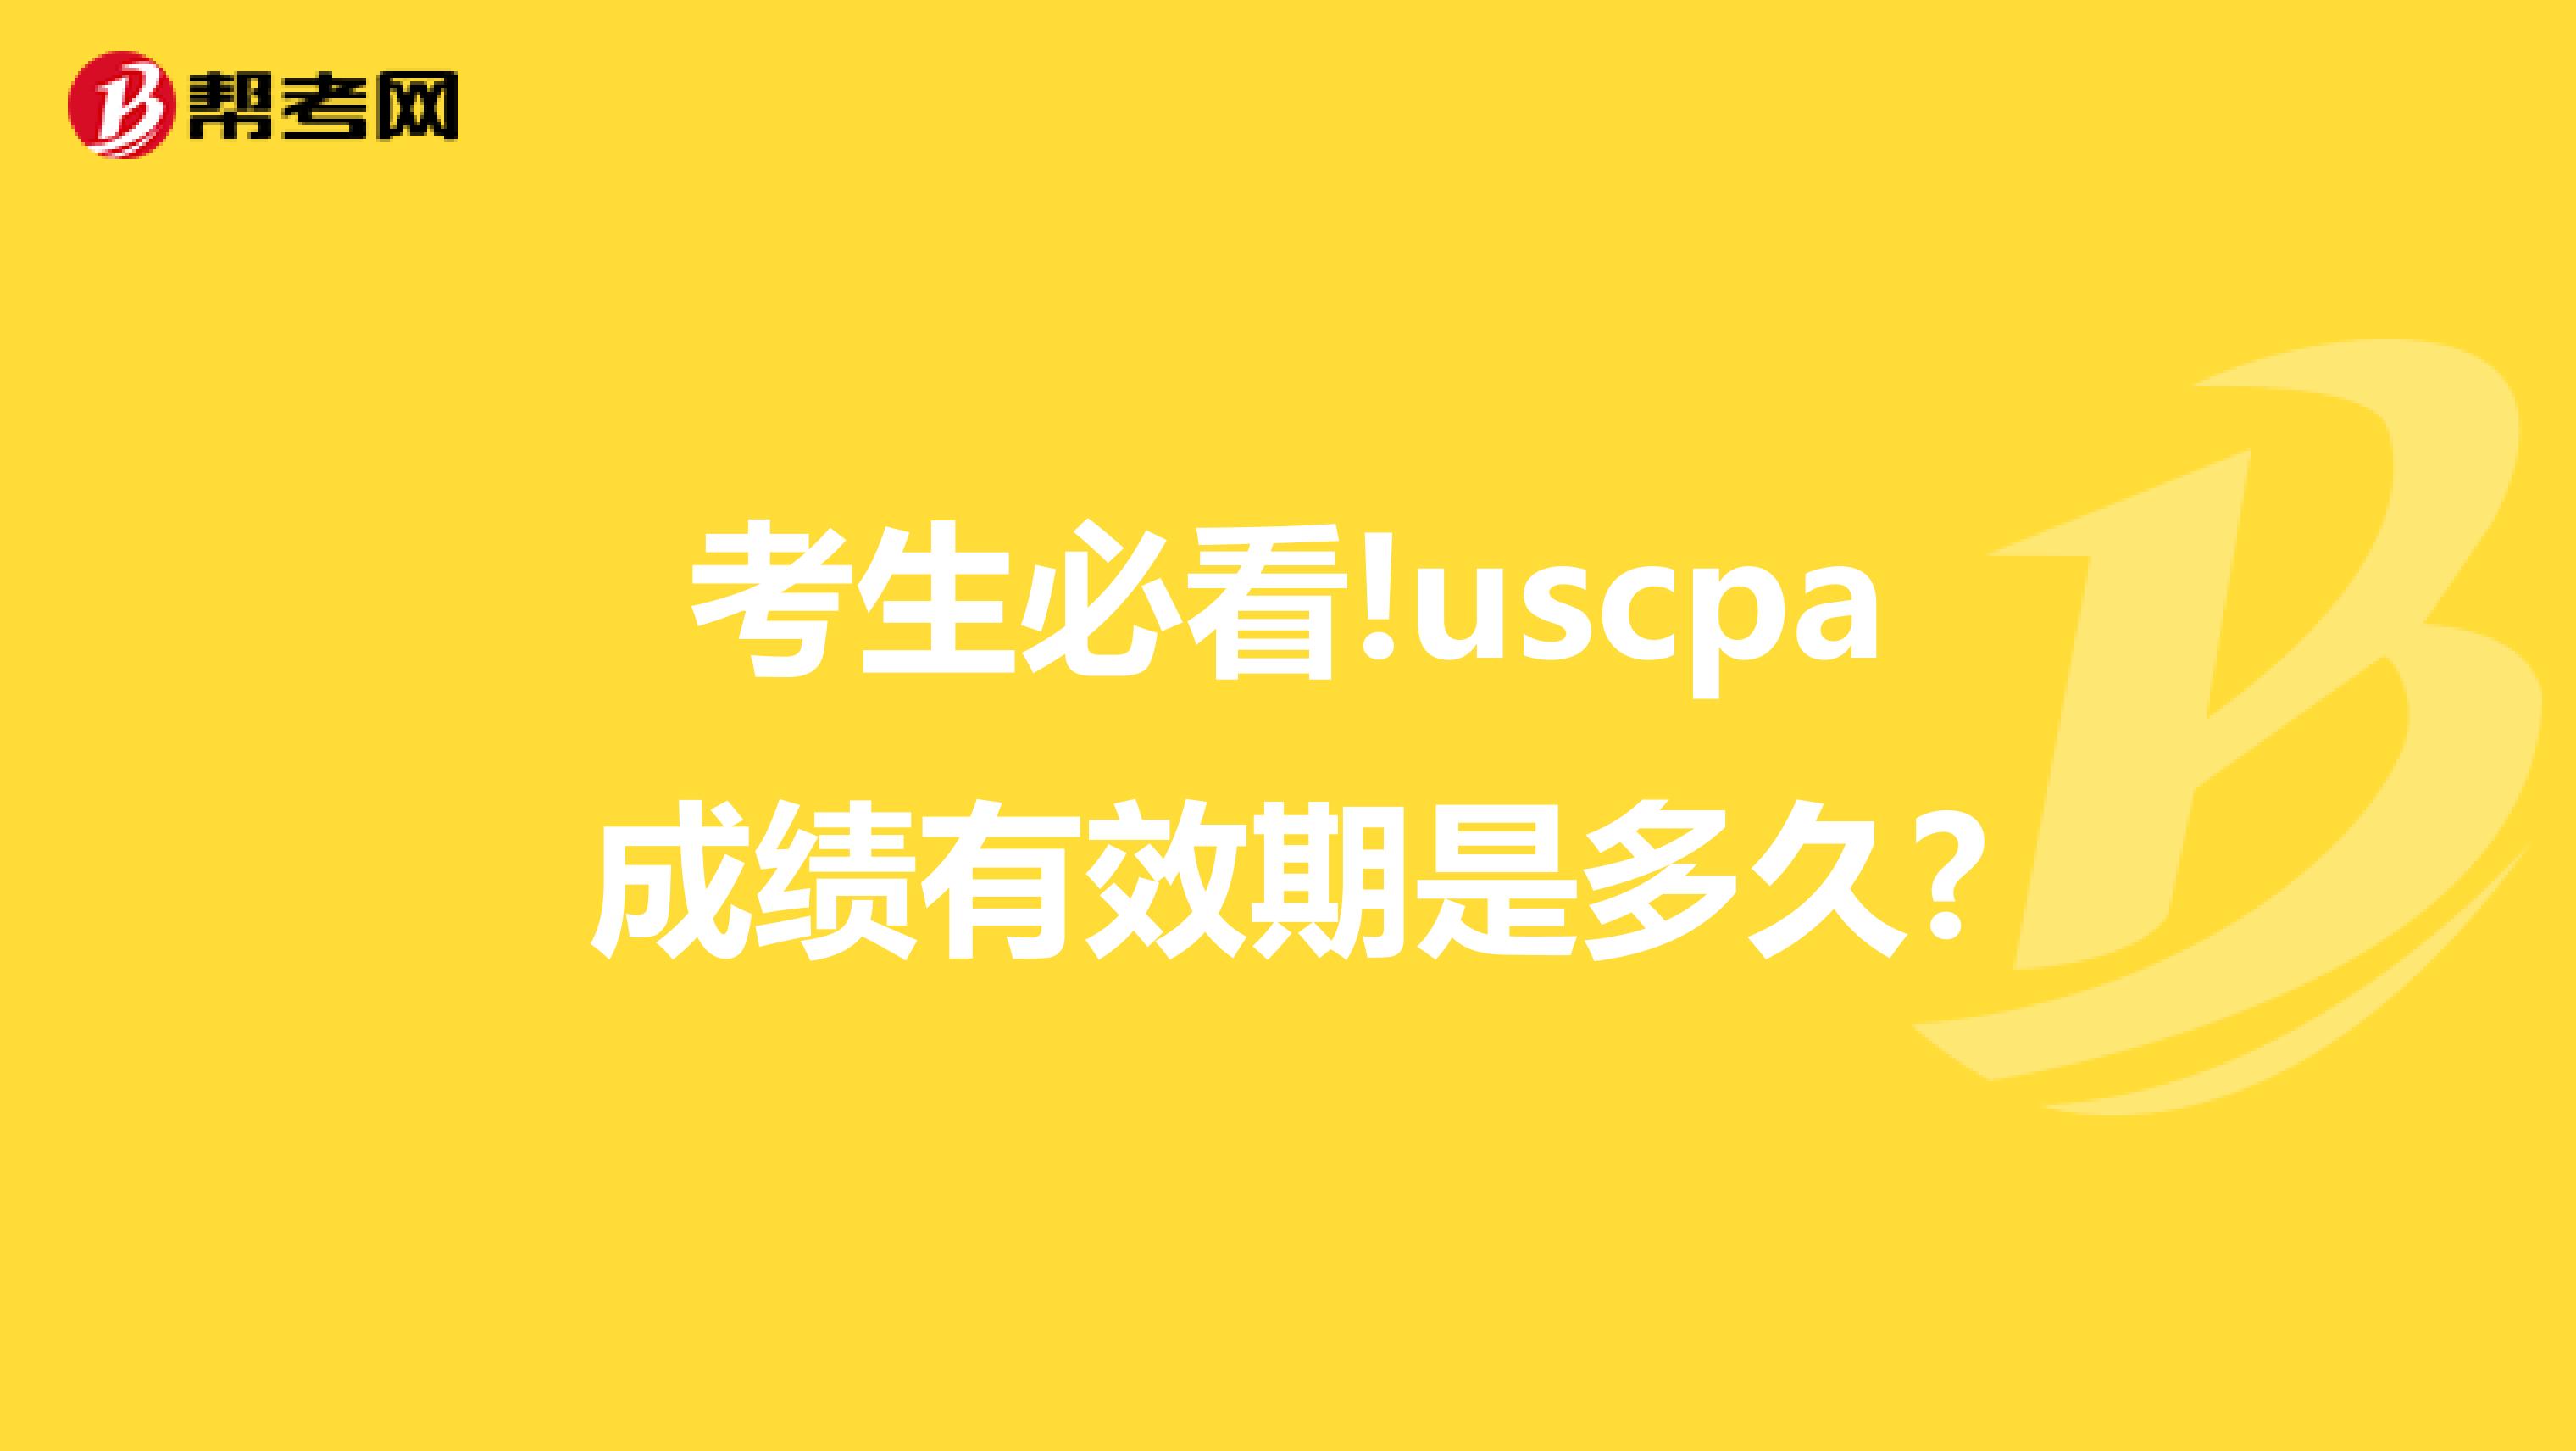 考生必看!uscpa成绩有效期是多久?